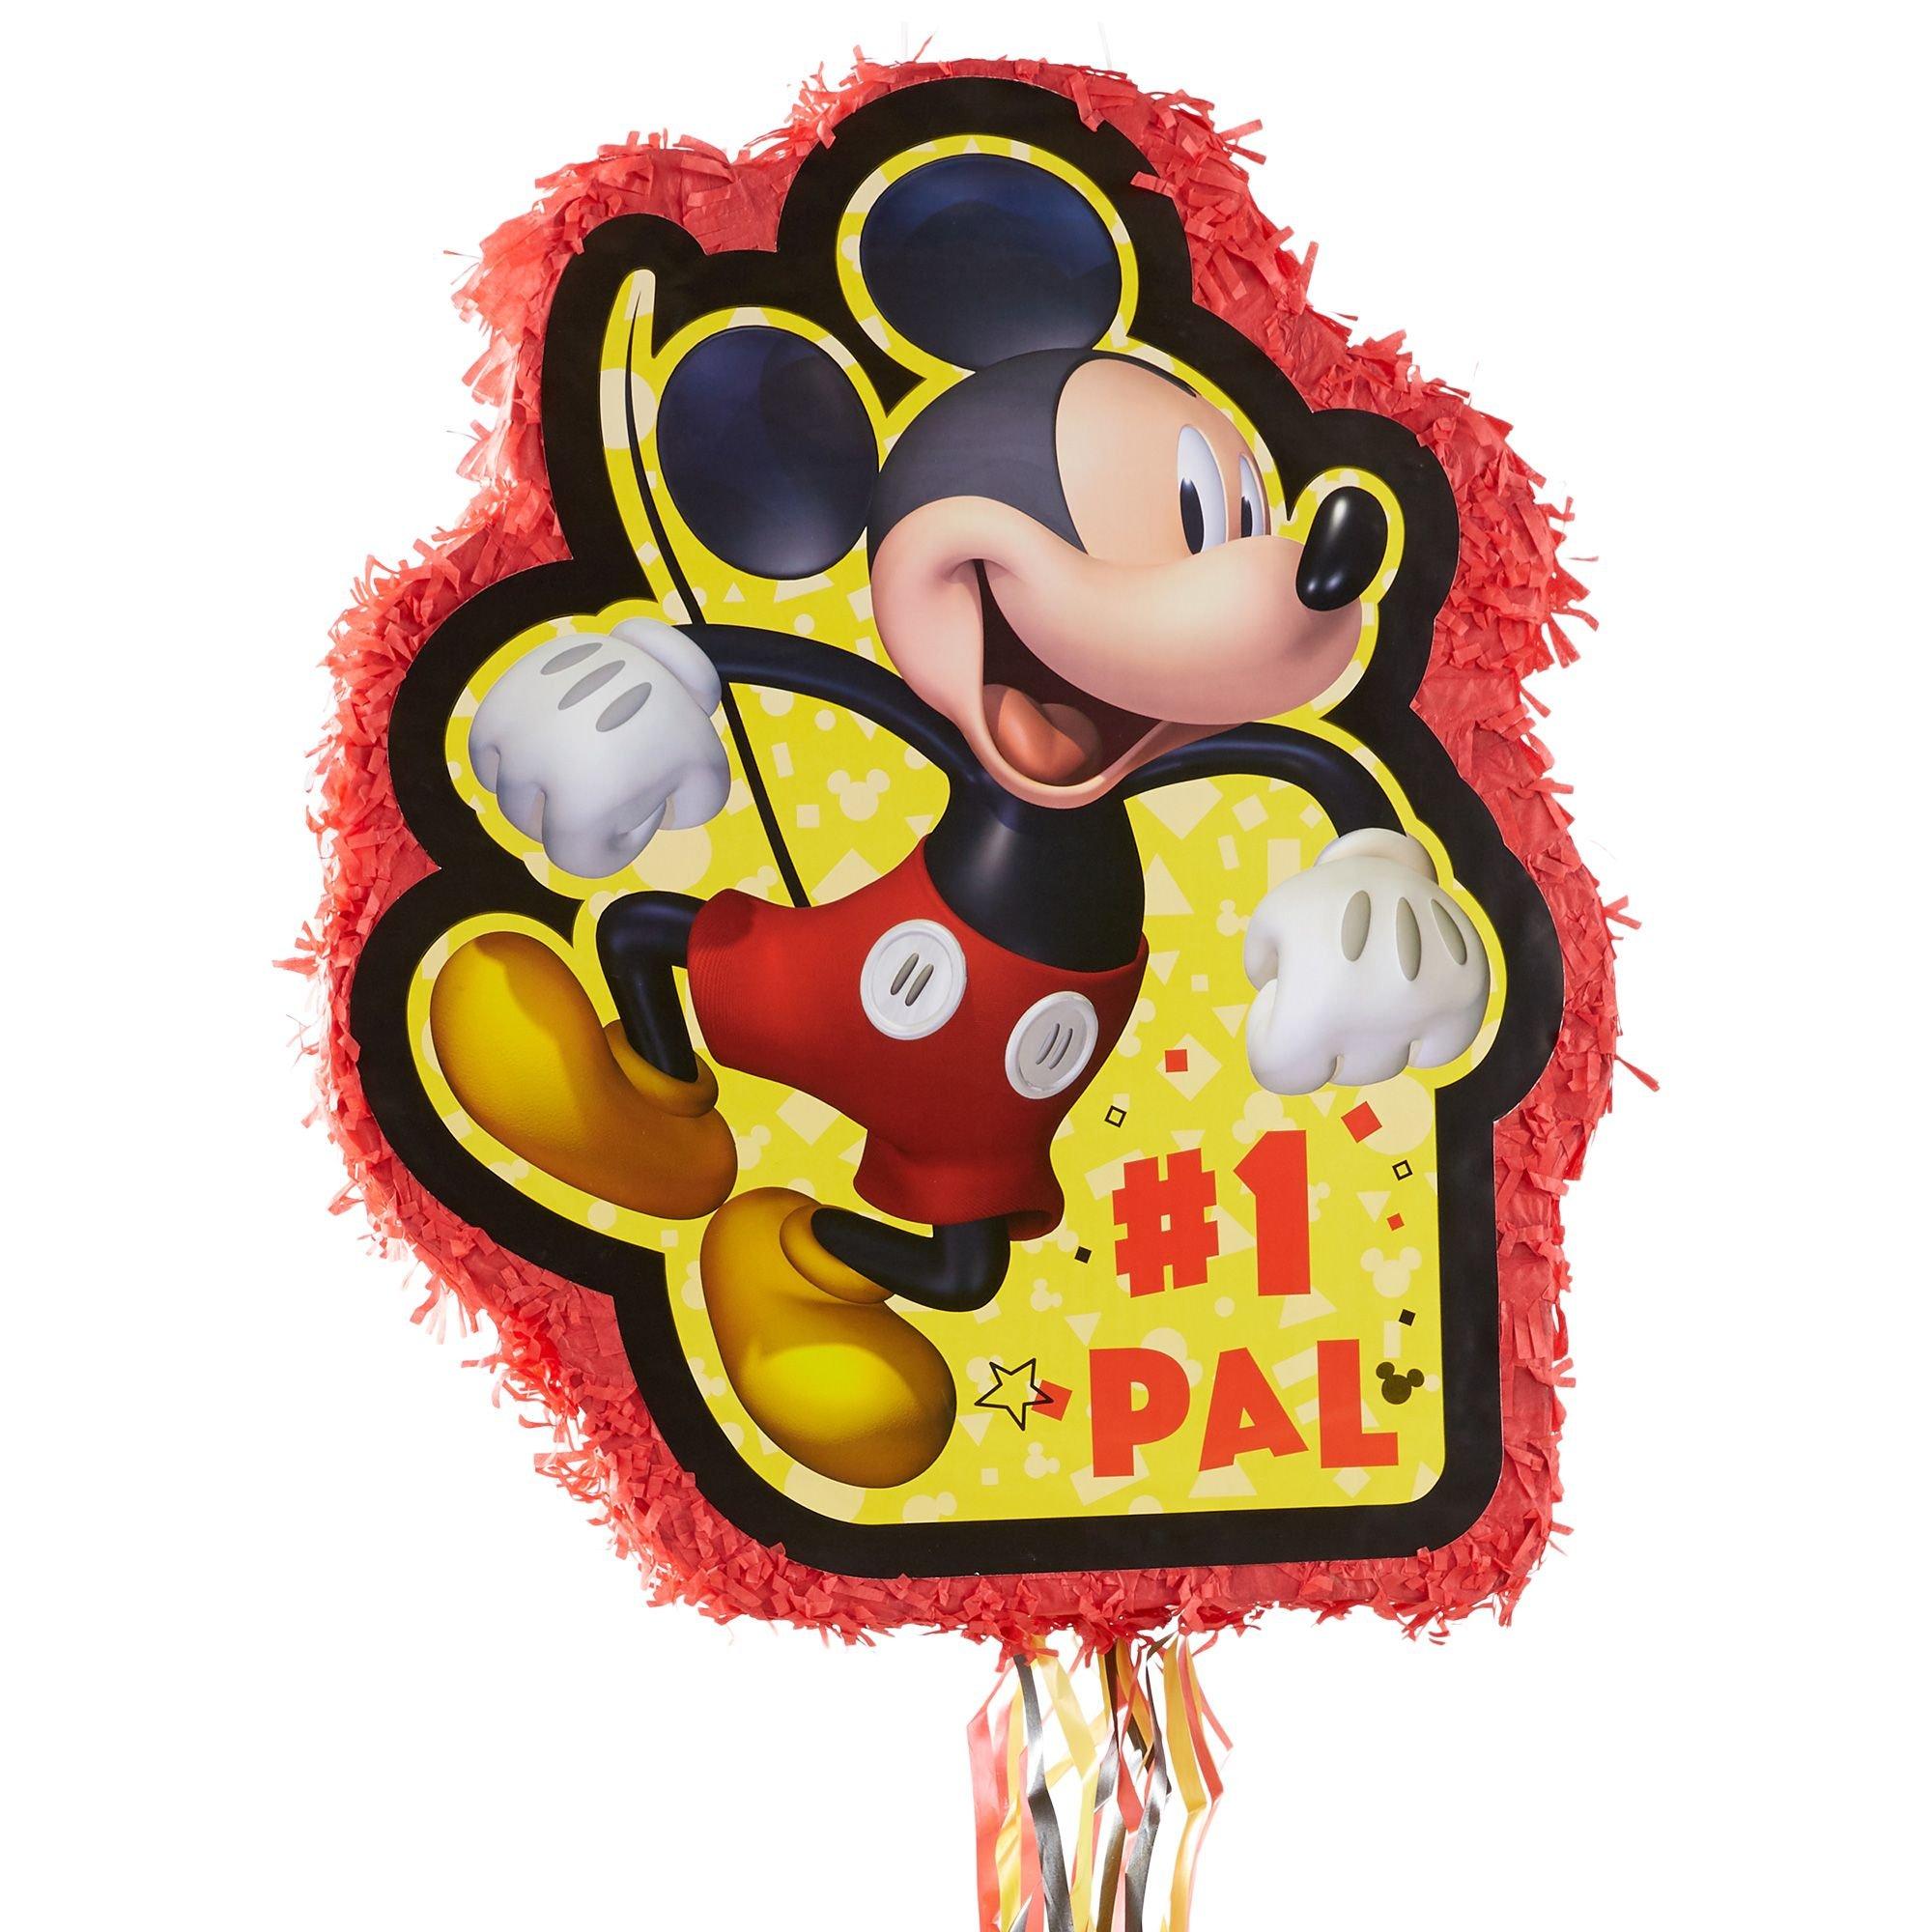 Party City Mickey Mouse Forever - Vajilla para 8 invitados, platos de  Disney, servilletas, vasos, utensilios y decoraciones